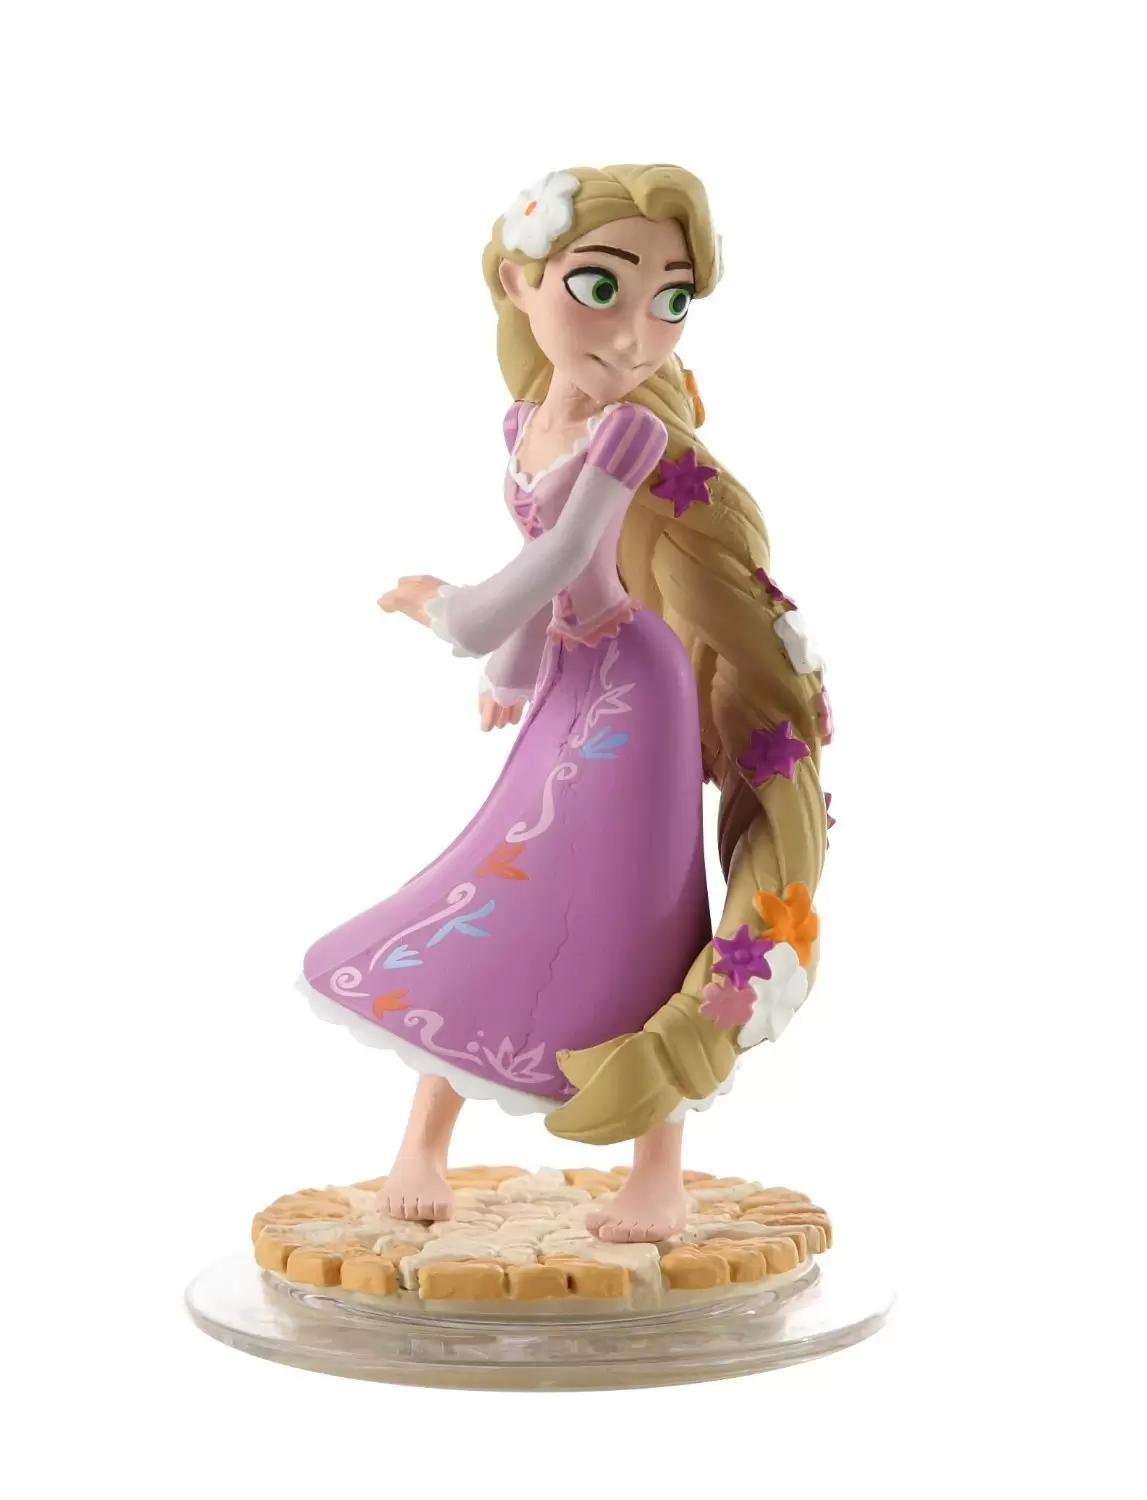 Disney Infinity Action figures - Rapunzel